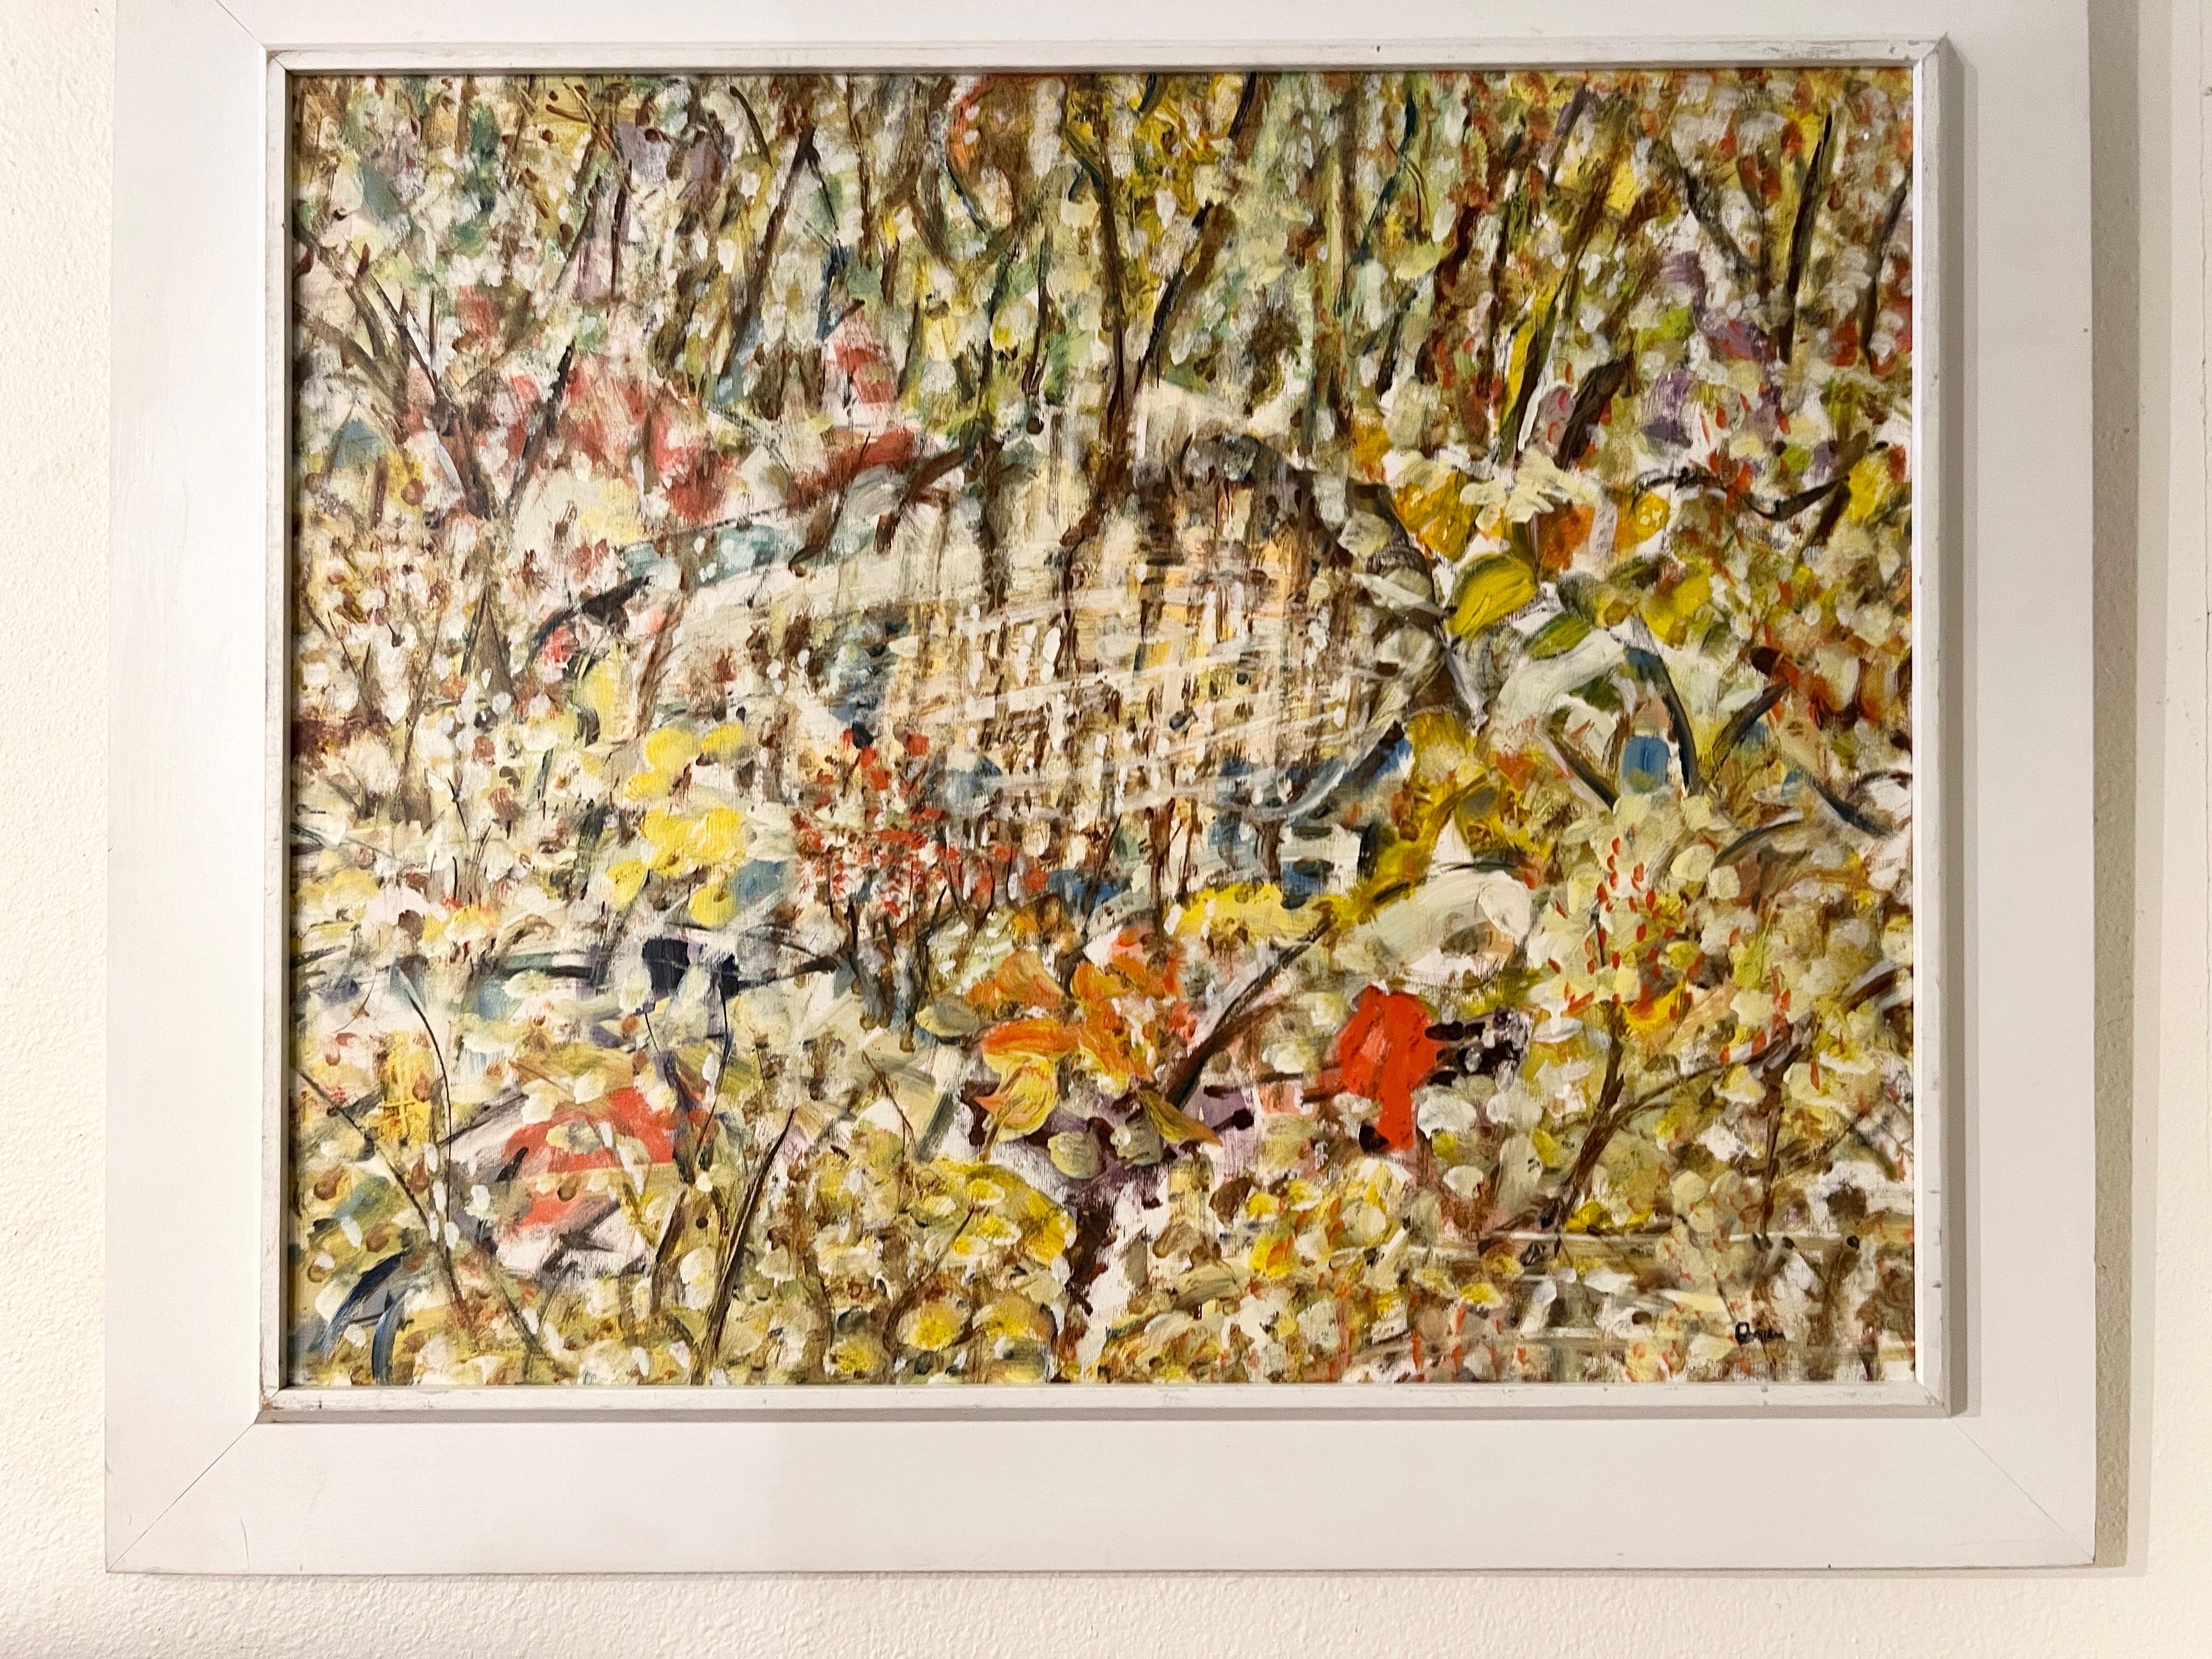 Dans l'hypnotique peinture à l'huile d'Arthur Pinajian de 1986, une luxuriante symphonie de la nature se déploie sur la toile. Les techniques de pinceau distinctives de l'artiste donnent vie au paysage d'une forêt sereine, située au cœur de